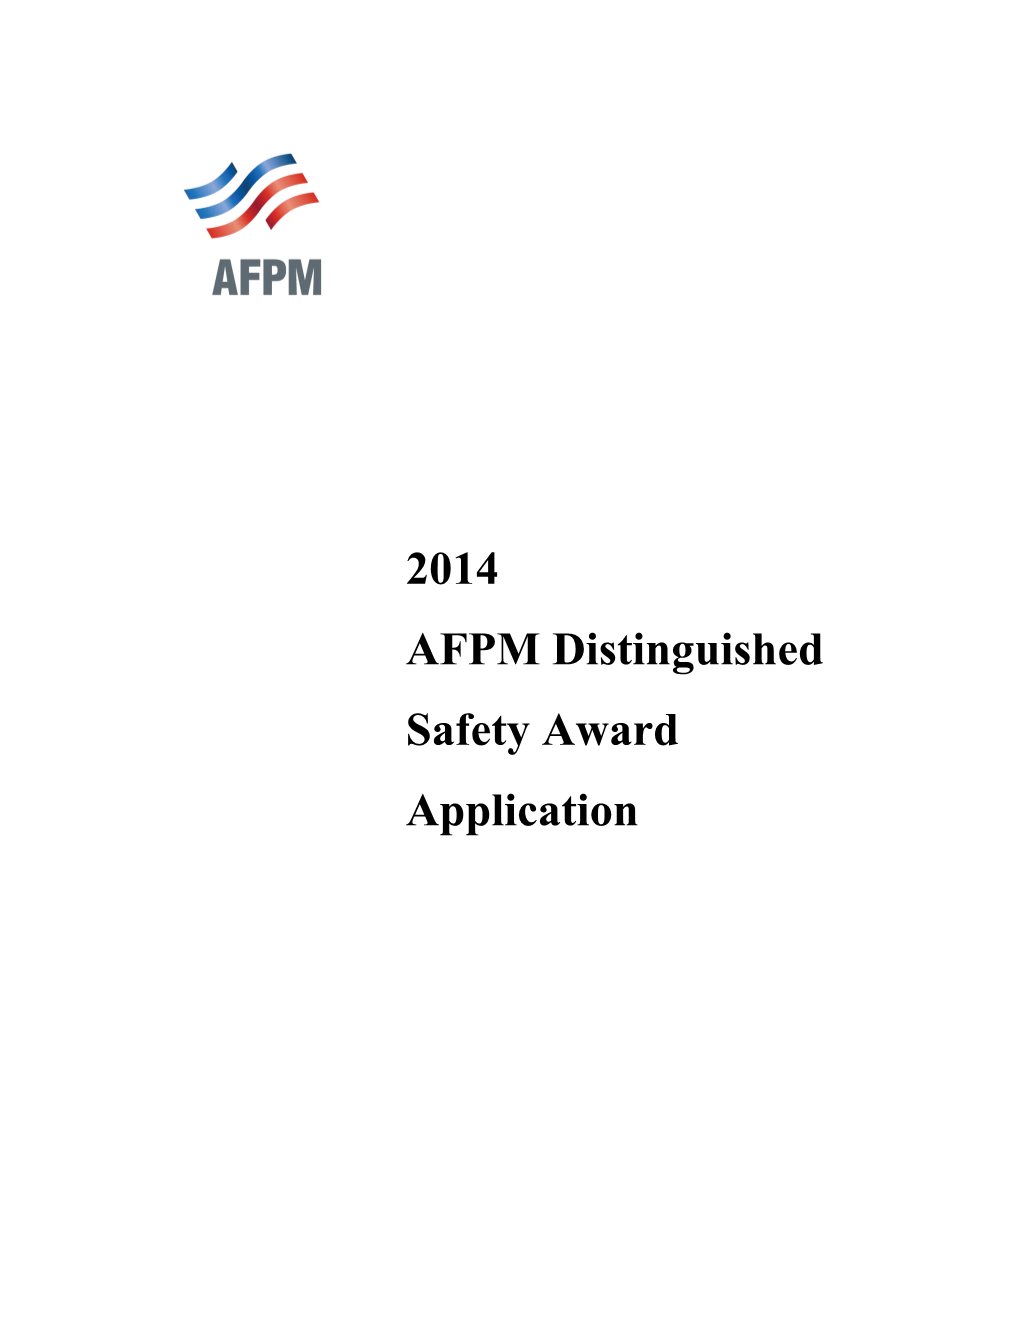 AFPM Distinguished Safety Award Application